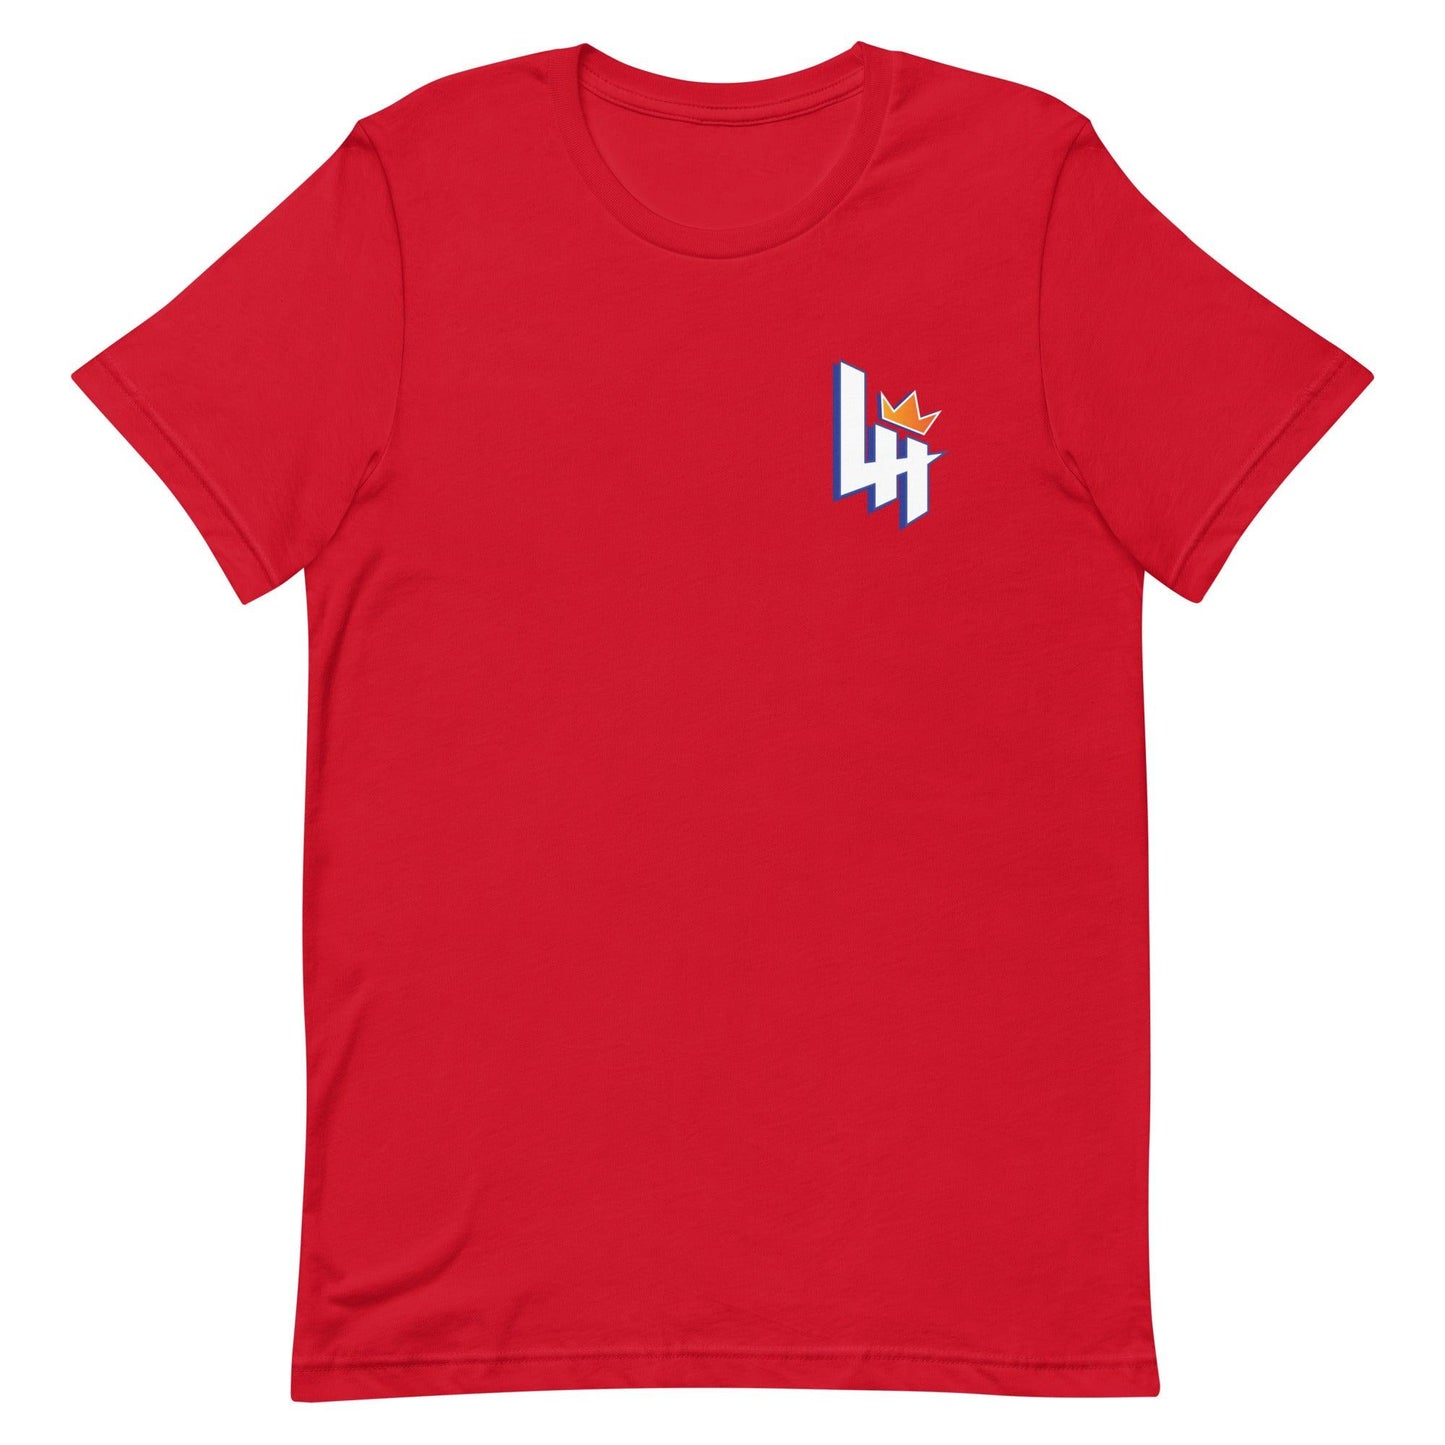 Lyndell Hudson II "Essential" t-shirt - Fan Arch